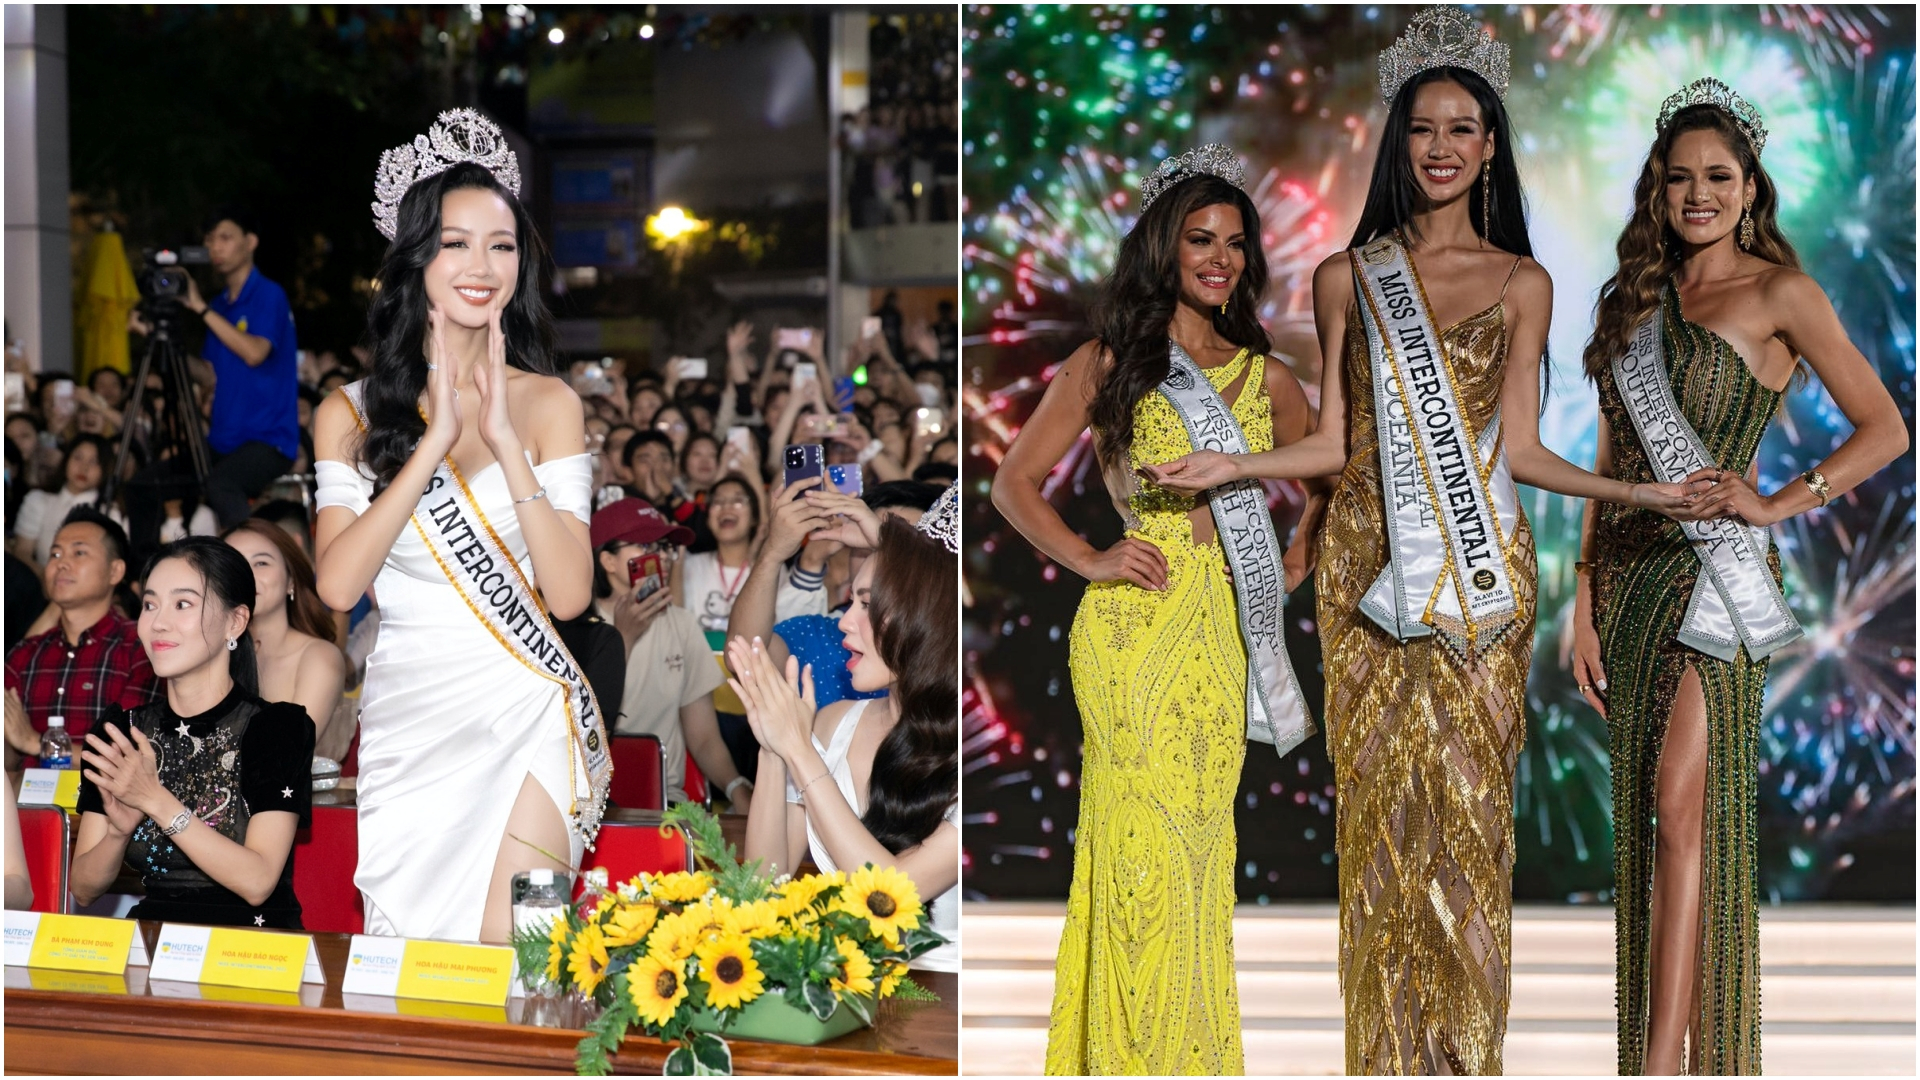 Bảo Ngọc bị soi bỏ bê nhiệm kỳ Miss Intercontinental, chỉ chạy show trong nước: "Thông cảm cho Sen Vàng nha"